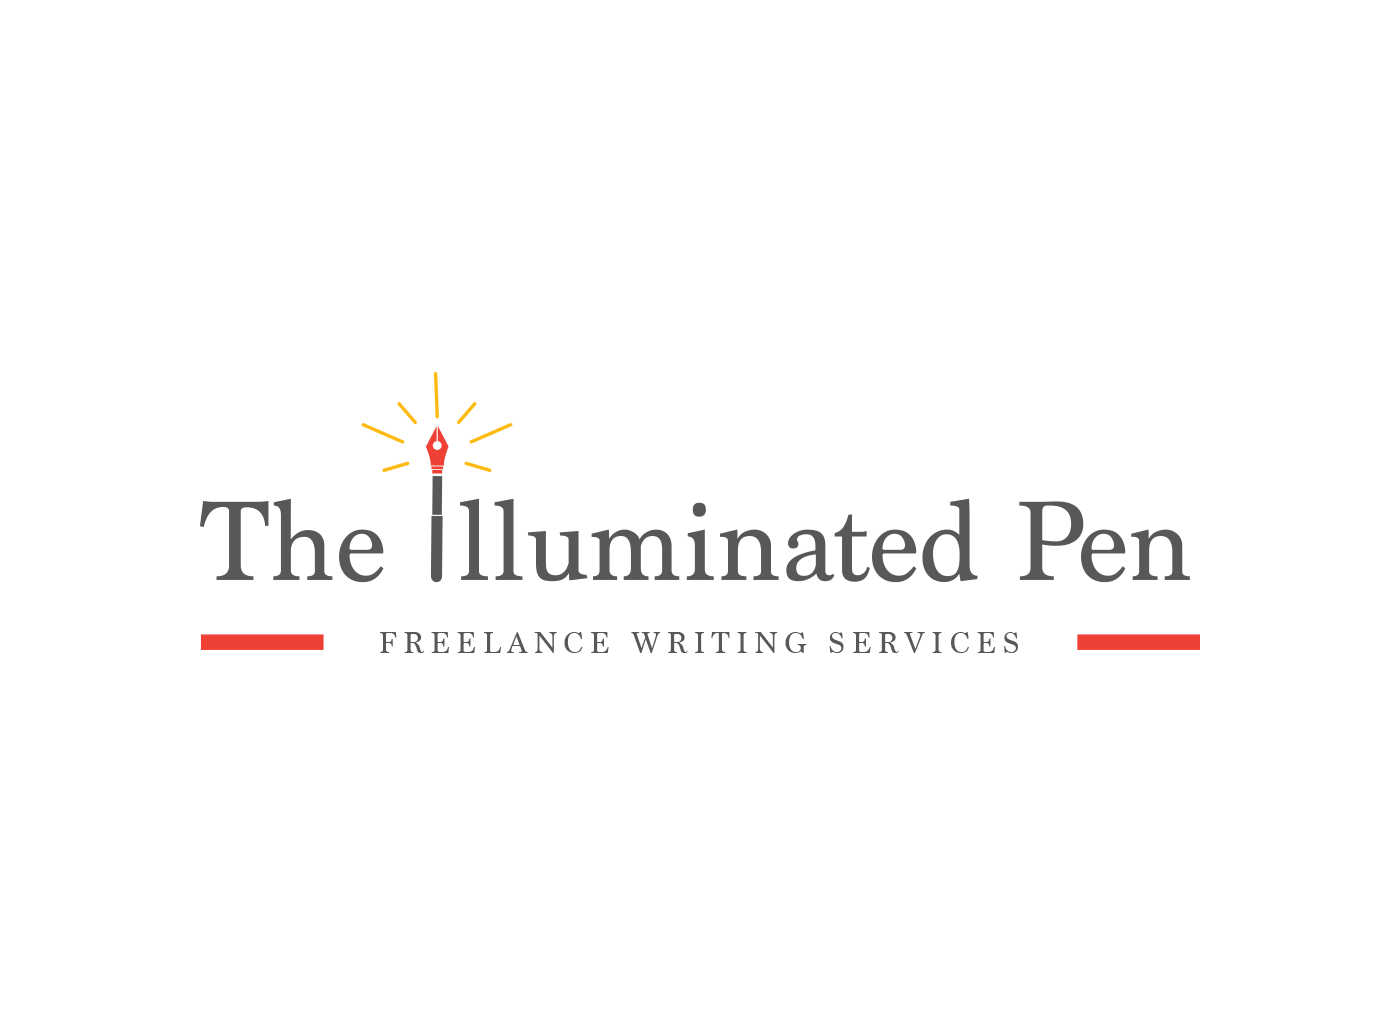 The Illuminated Pen